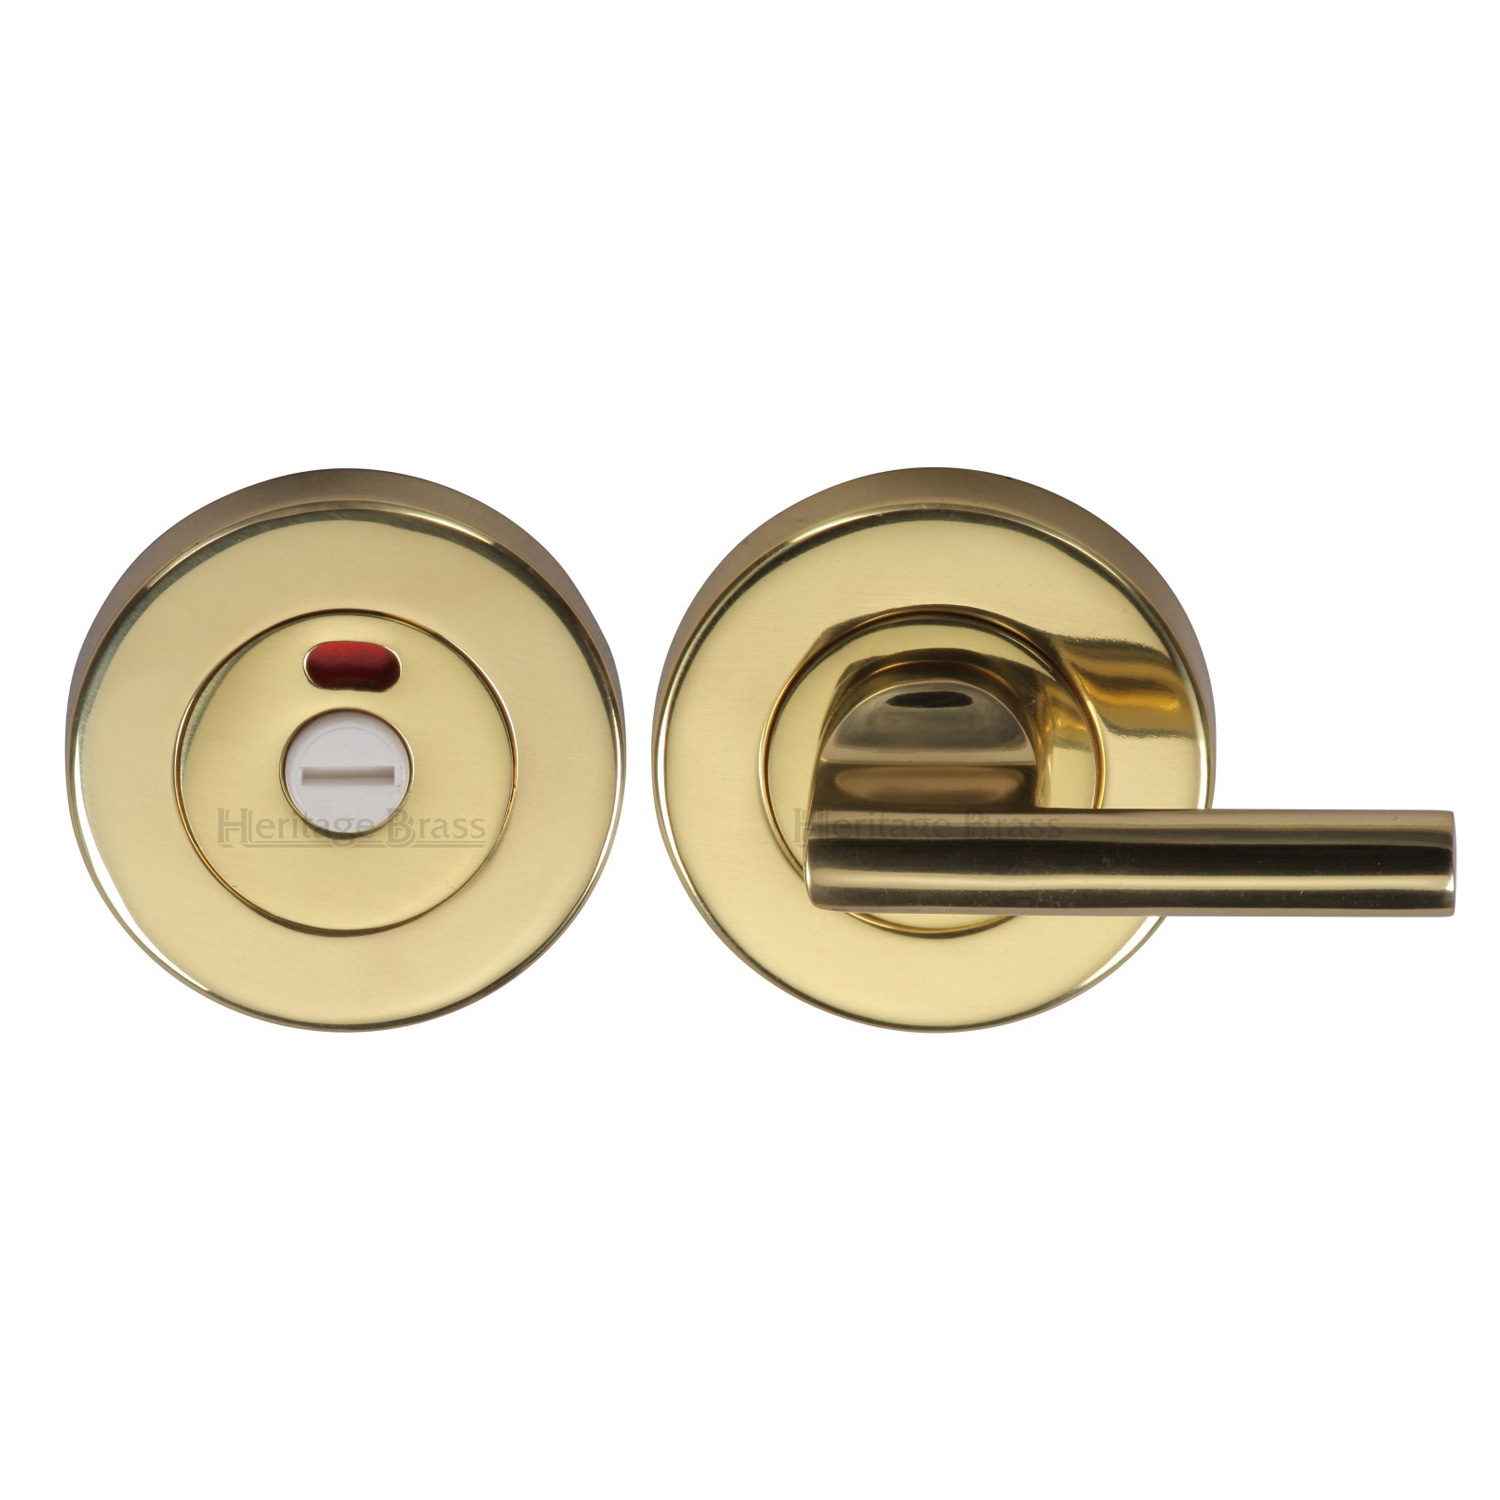 Heritage Brass Indicator Turn & Release for Bathroom Doors